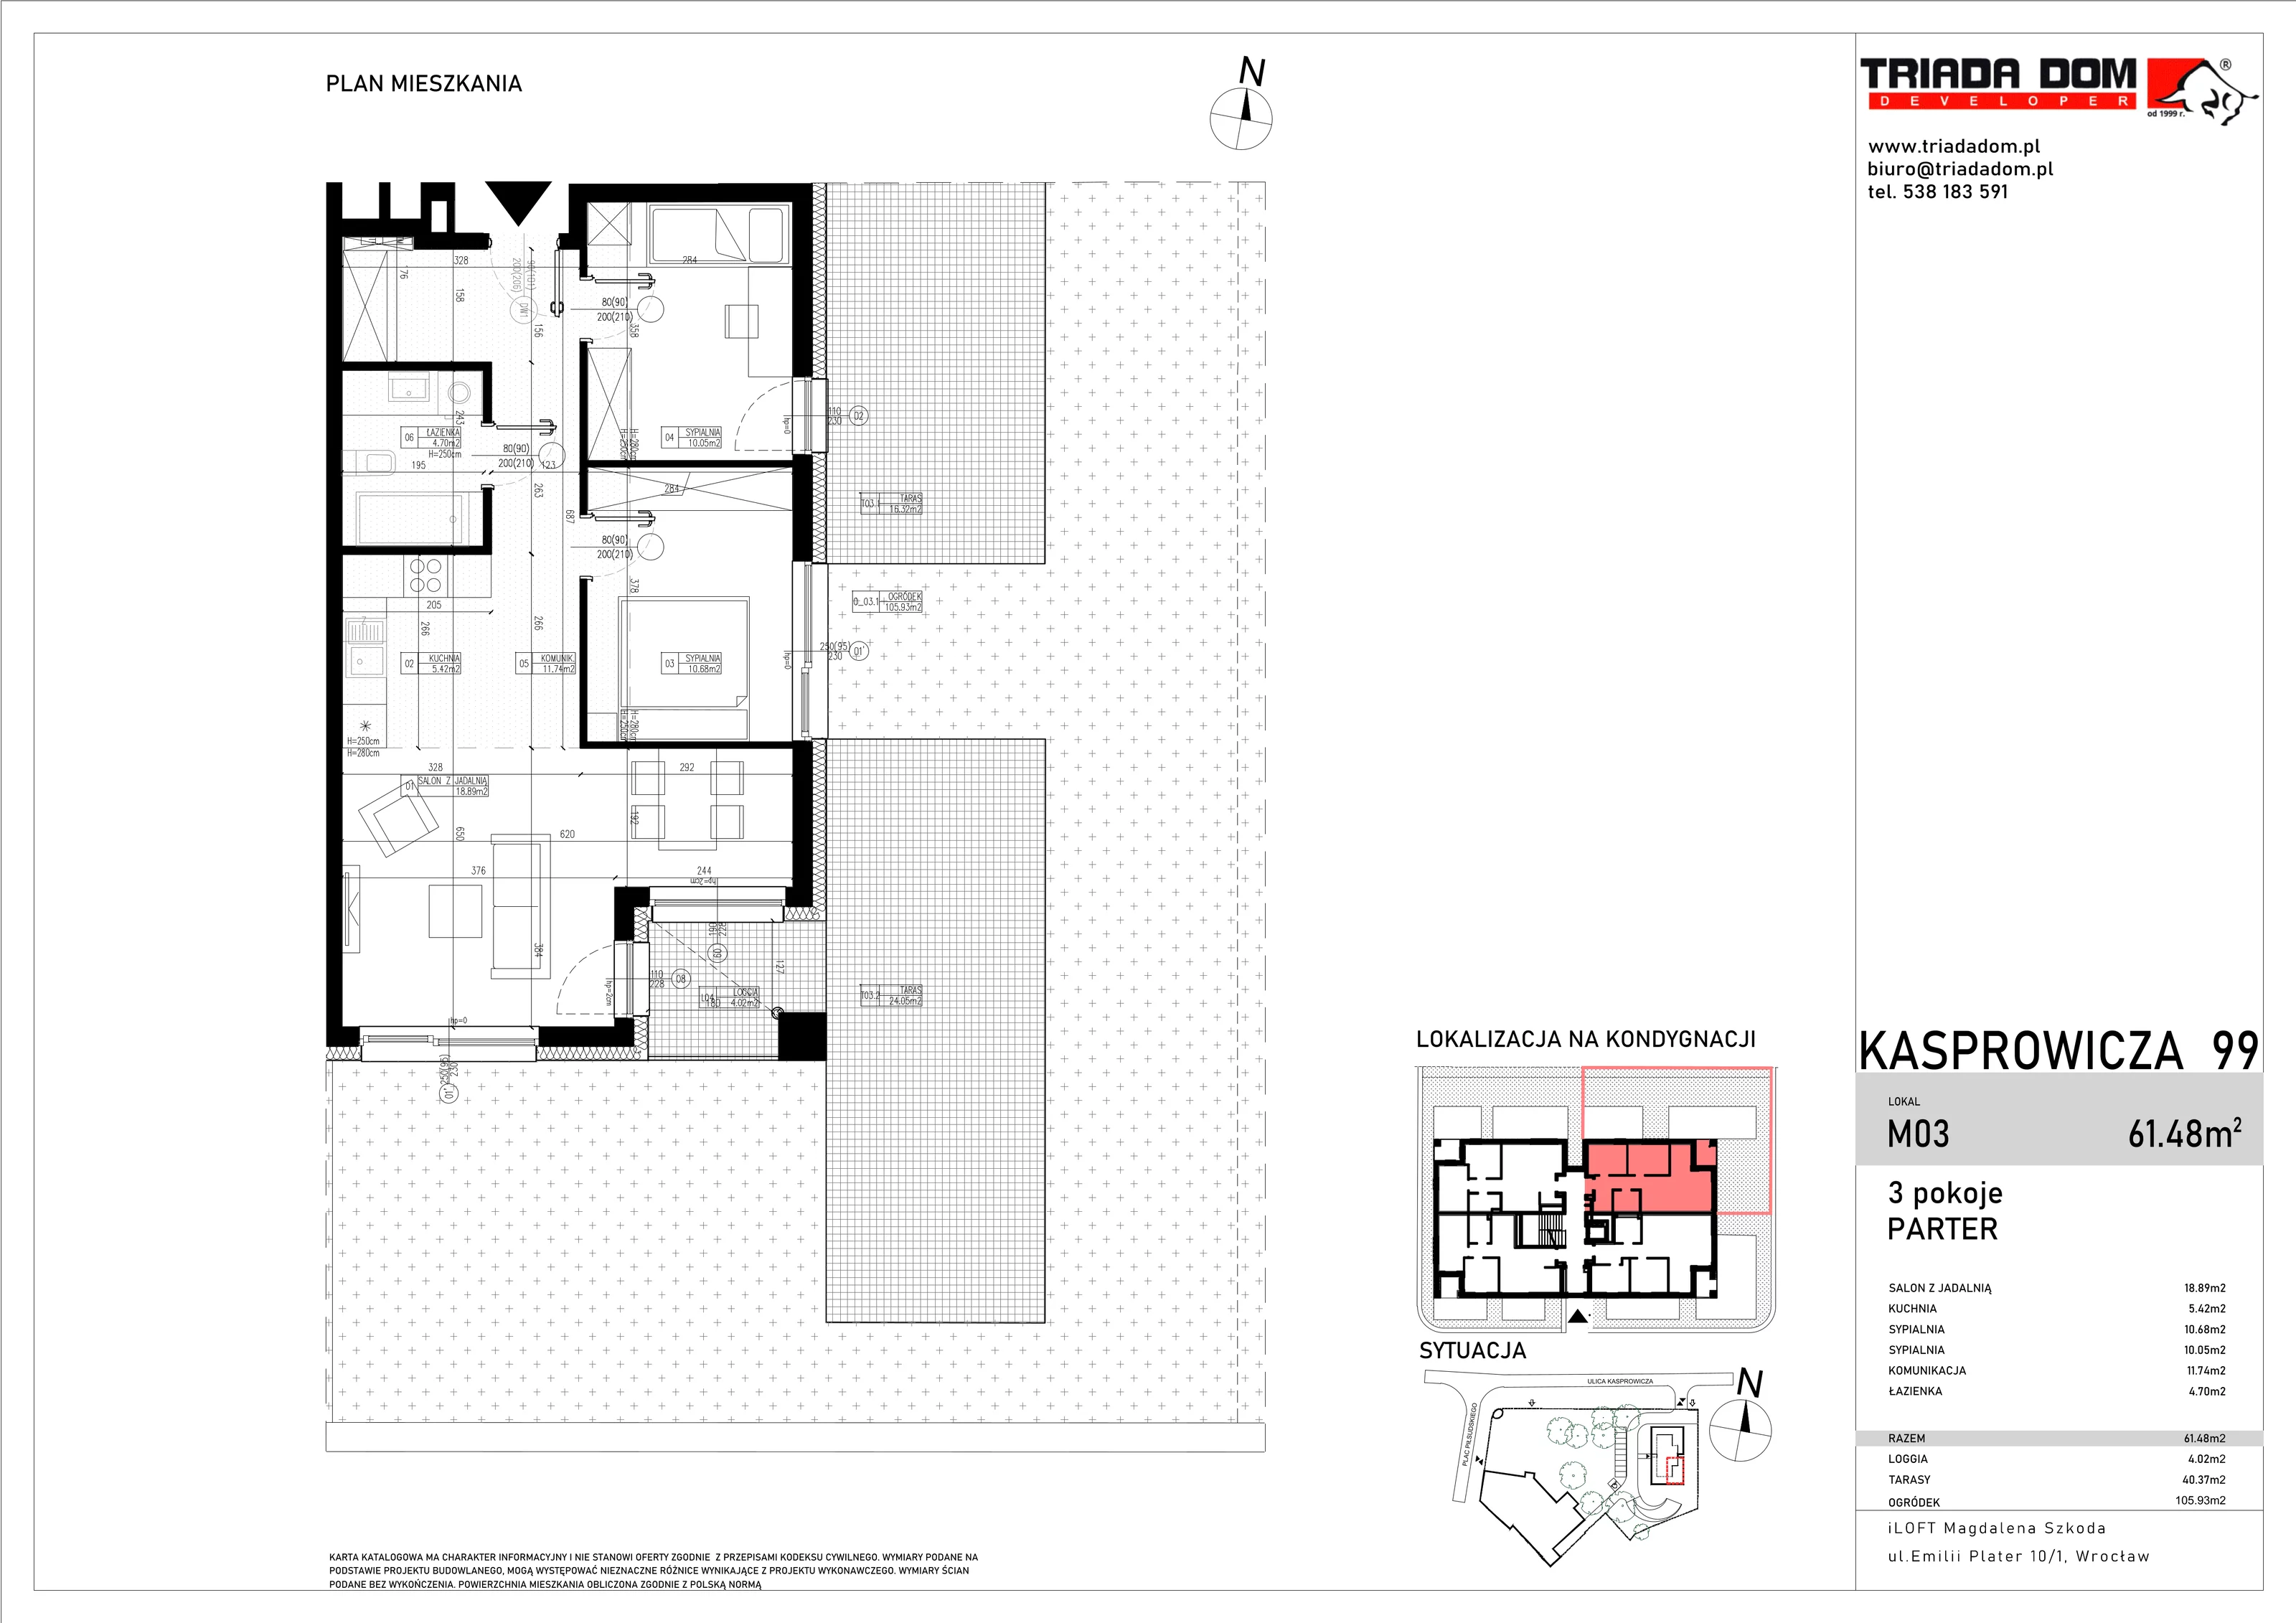 Apartament 61,48 m², parter, oferta nr M03, Apartamenty Kasprowicza Premium, Wrocław, Psie Pole-Zawidawie, Karłowice, al. Jana Kasprowicza 99